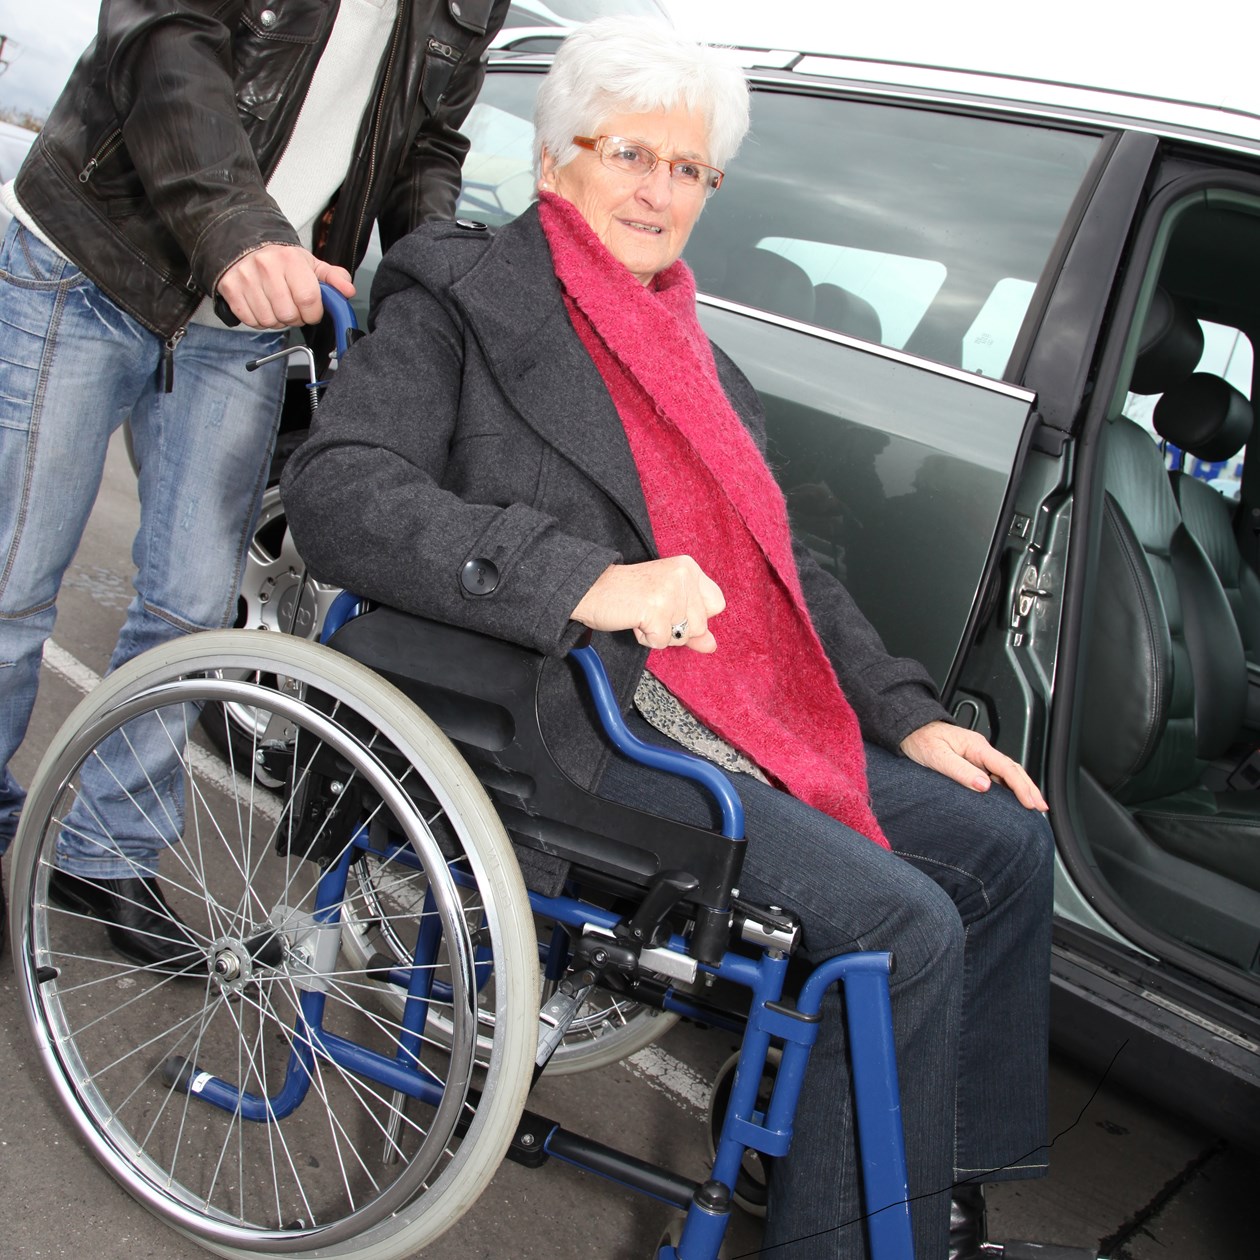 Mand og dame, der gør klar til at køre i handicapbil